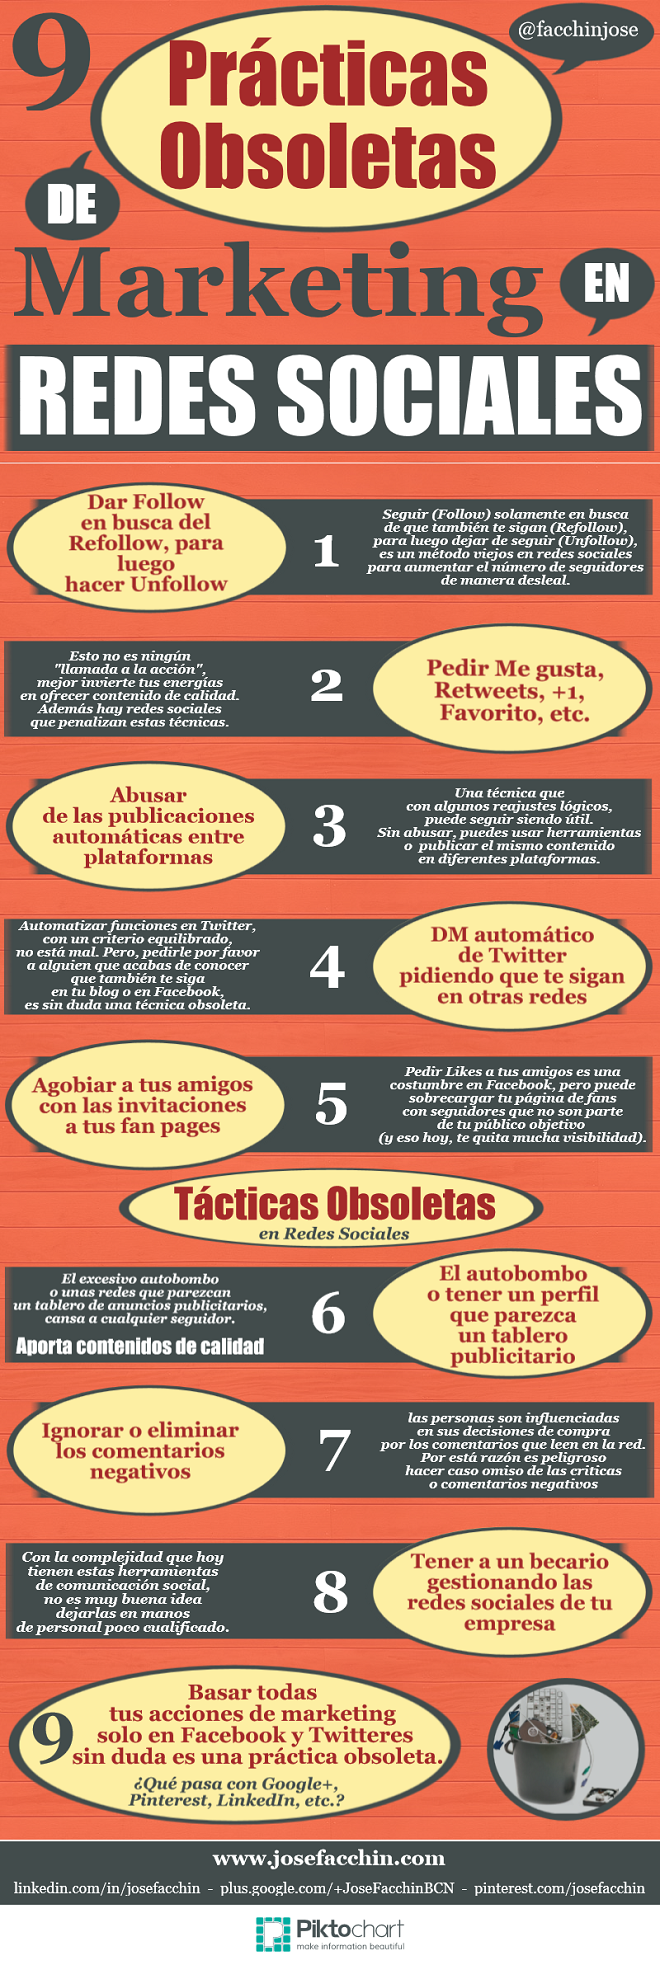 infografia_9_practicas_obsoletas_marketing_redes_sociales